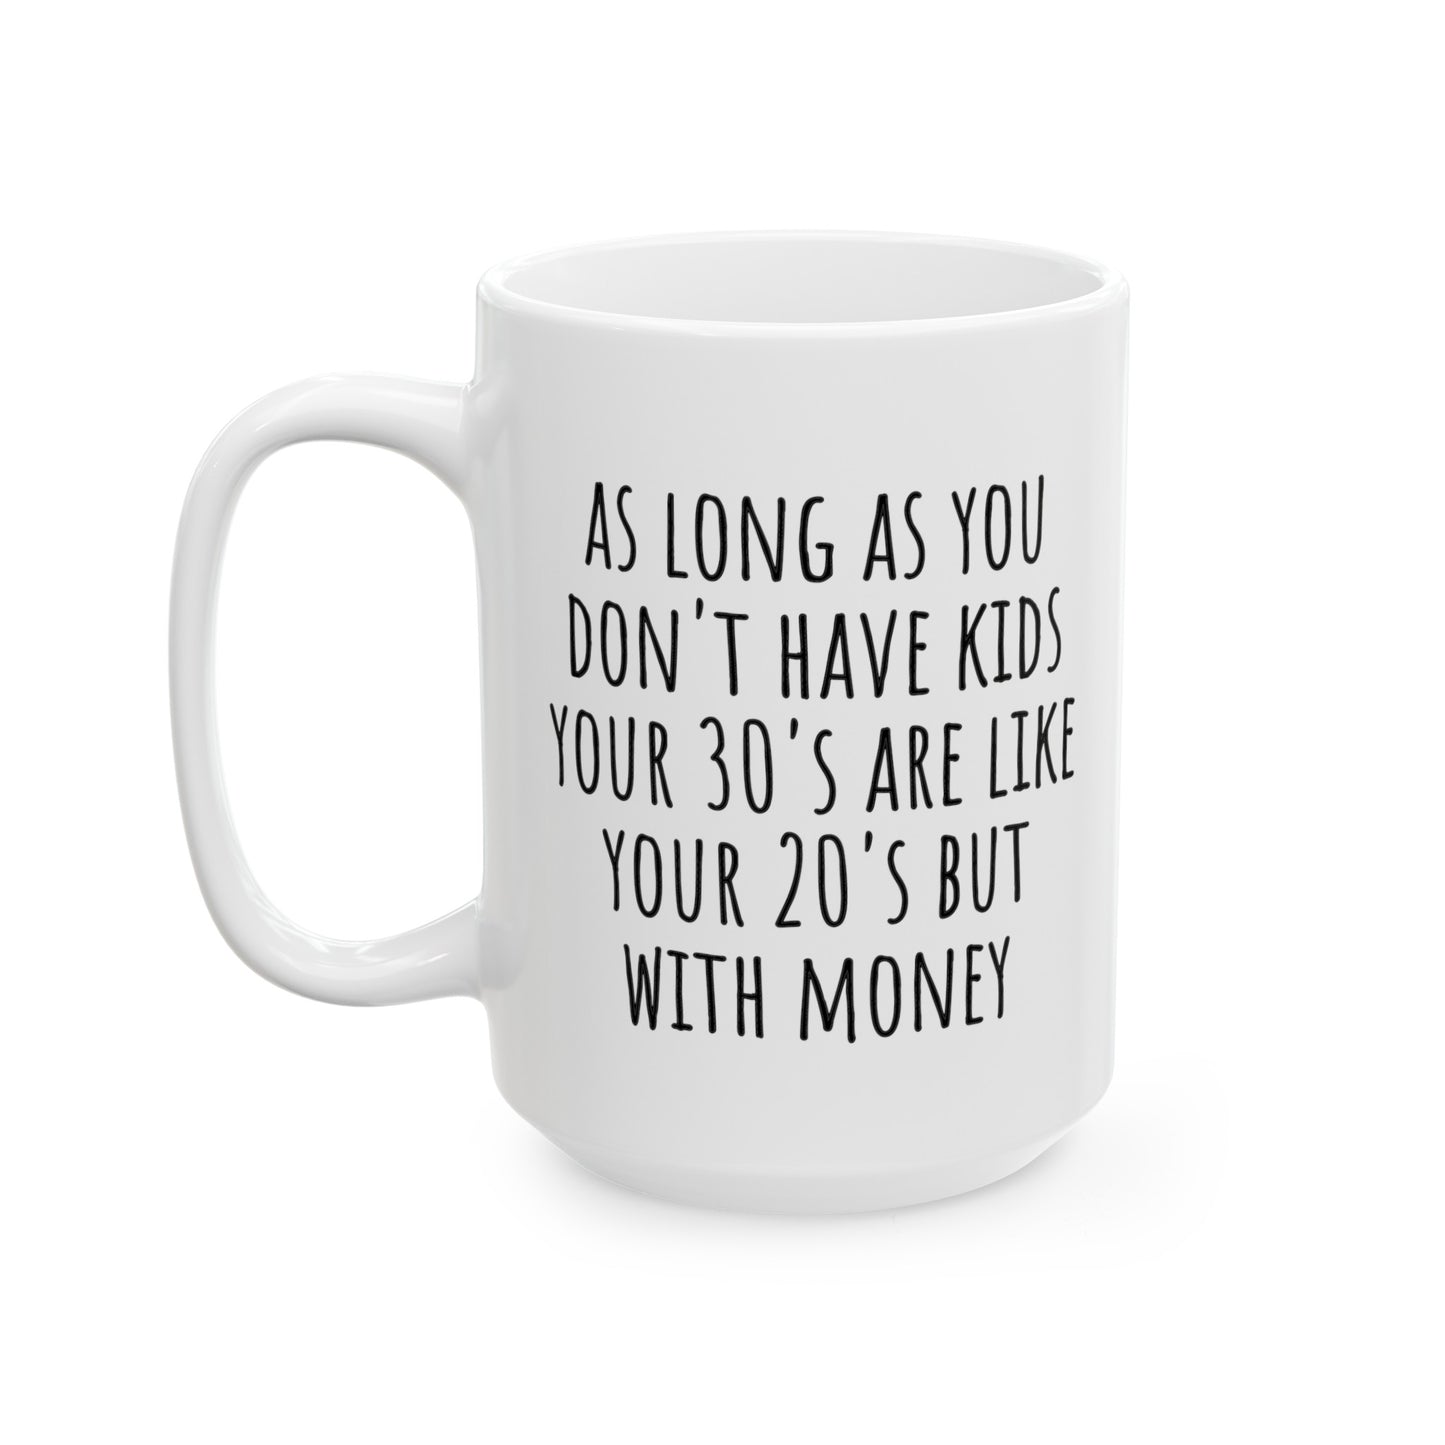 Your 30's Mug